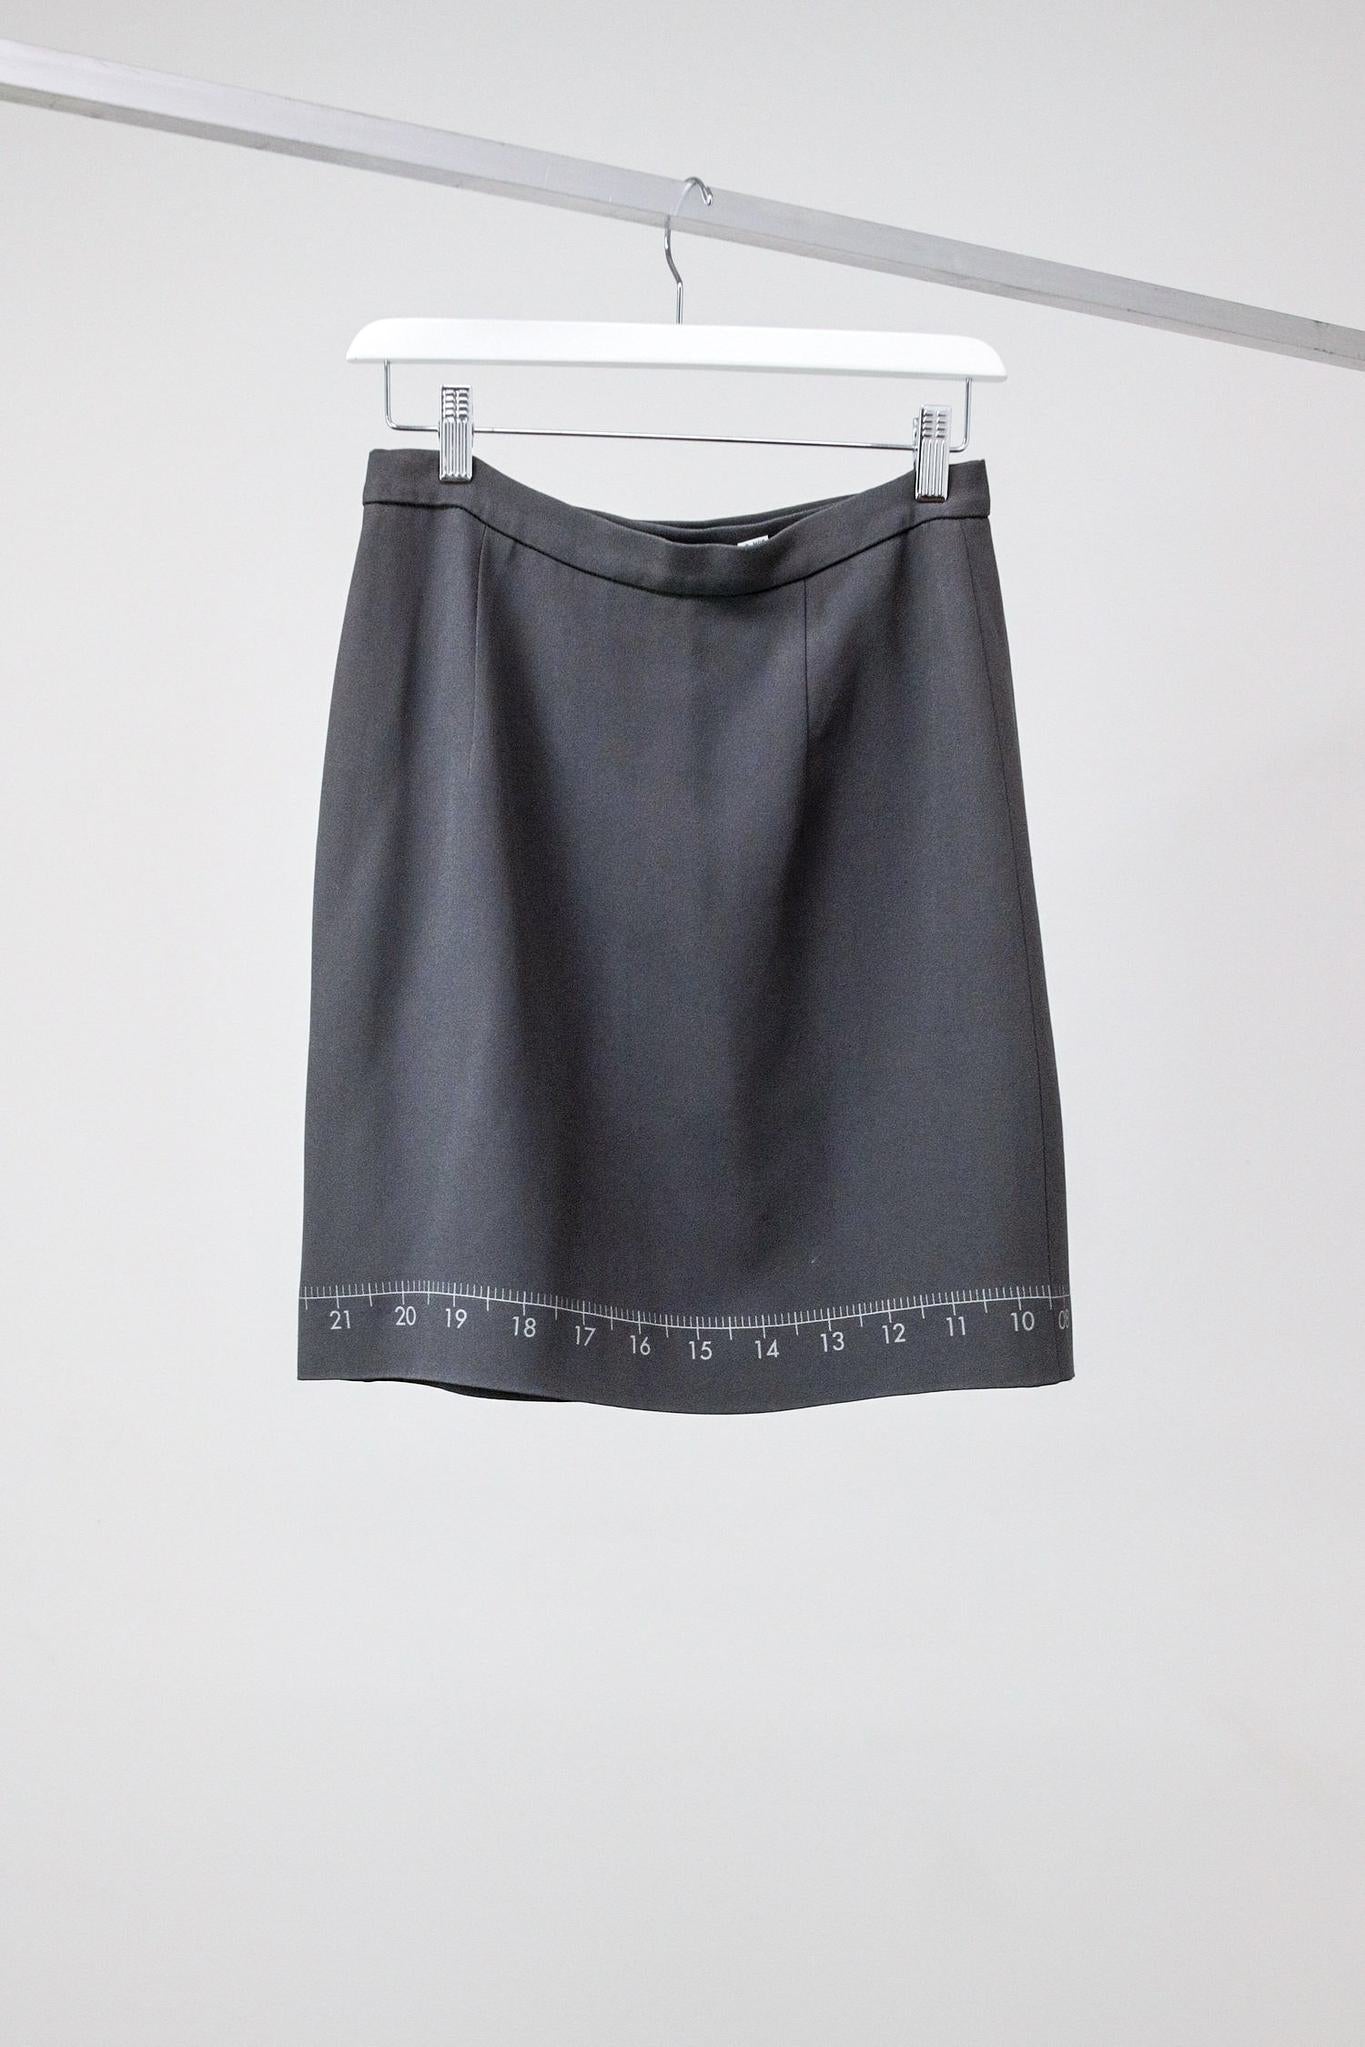 Moschino Cheap & Chic 90's "Nobody's Perfect" Skirt